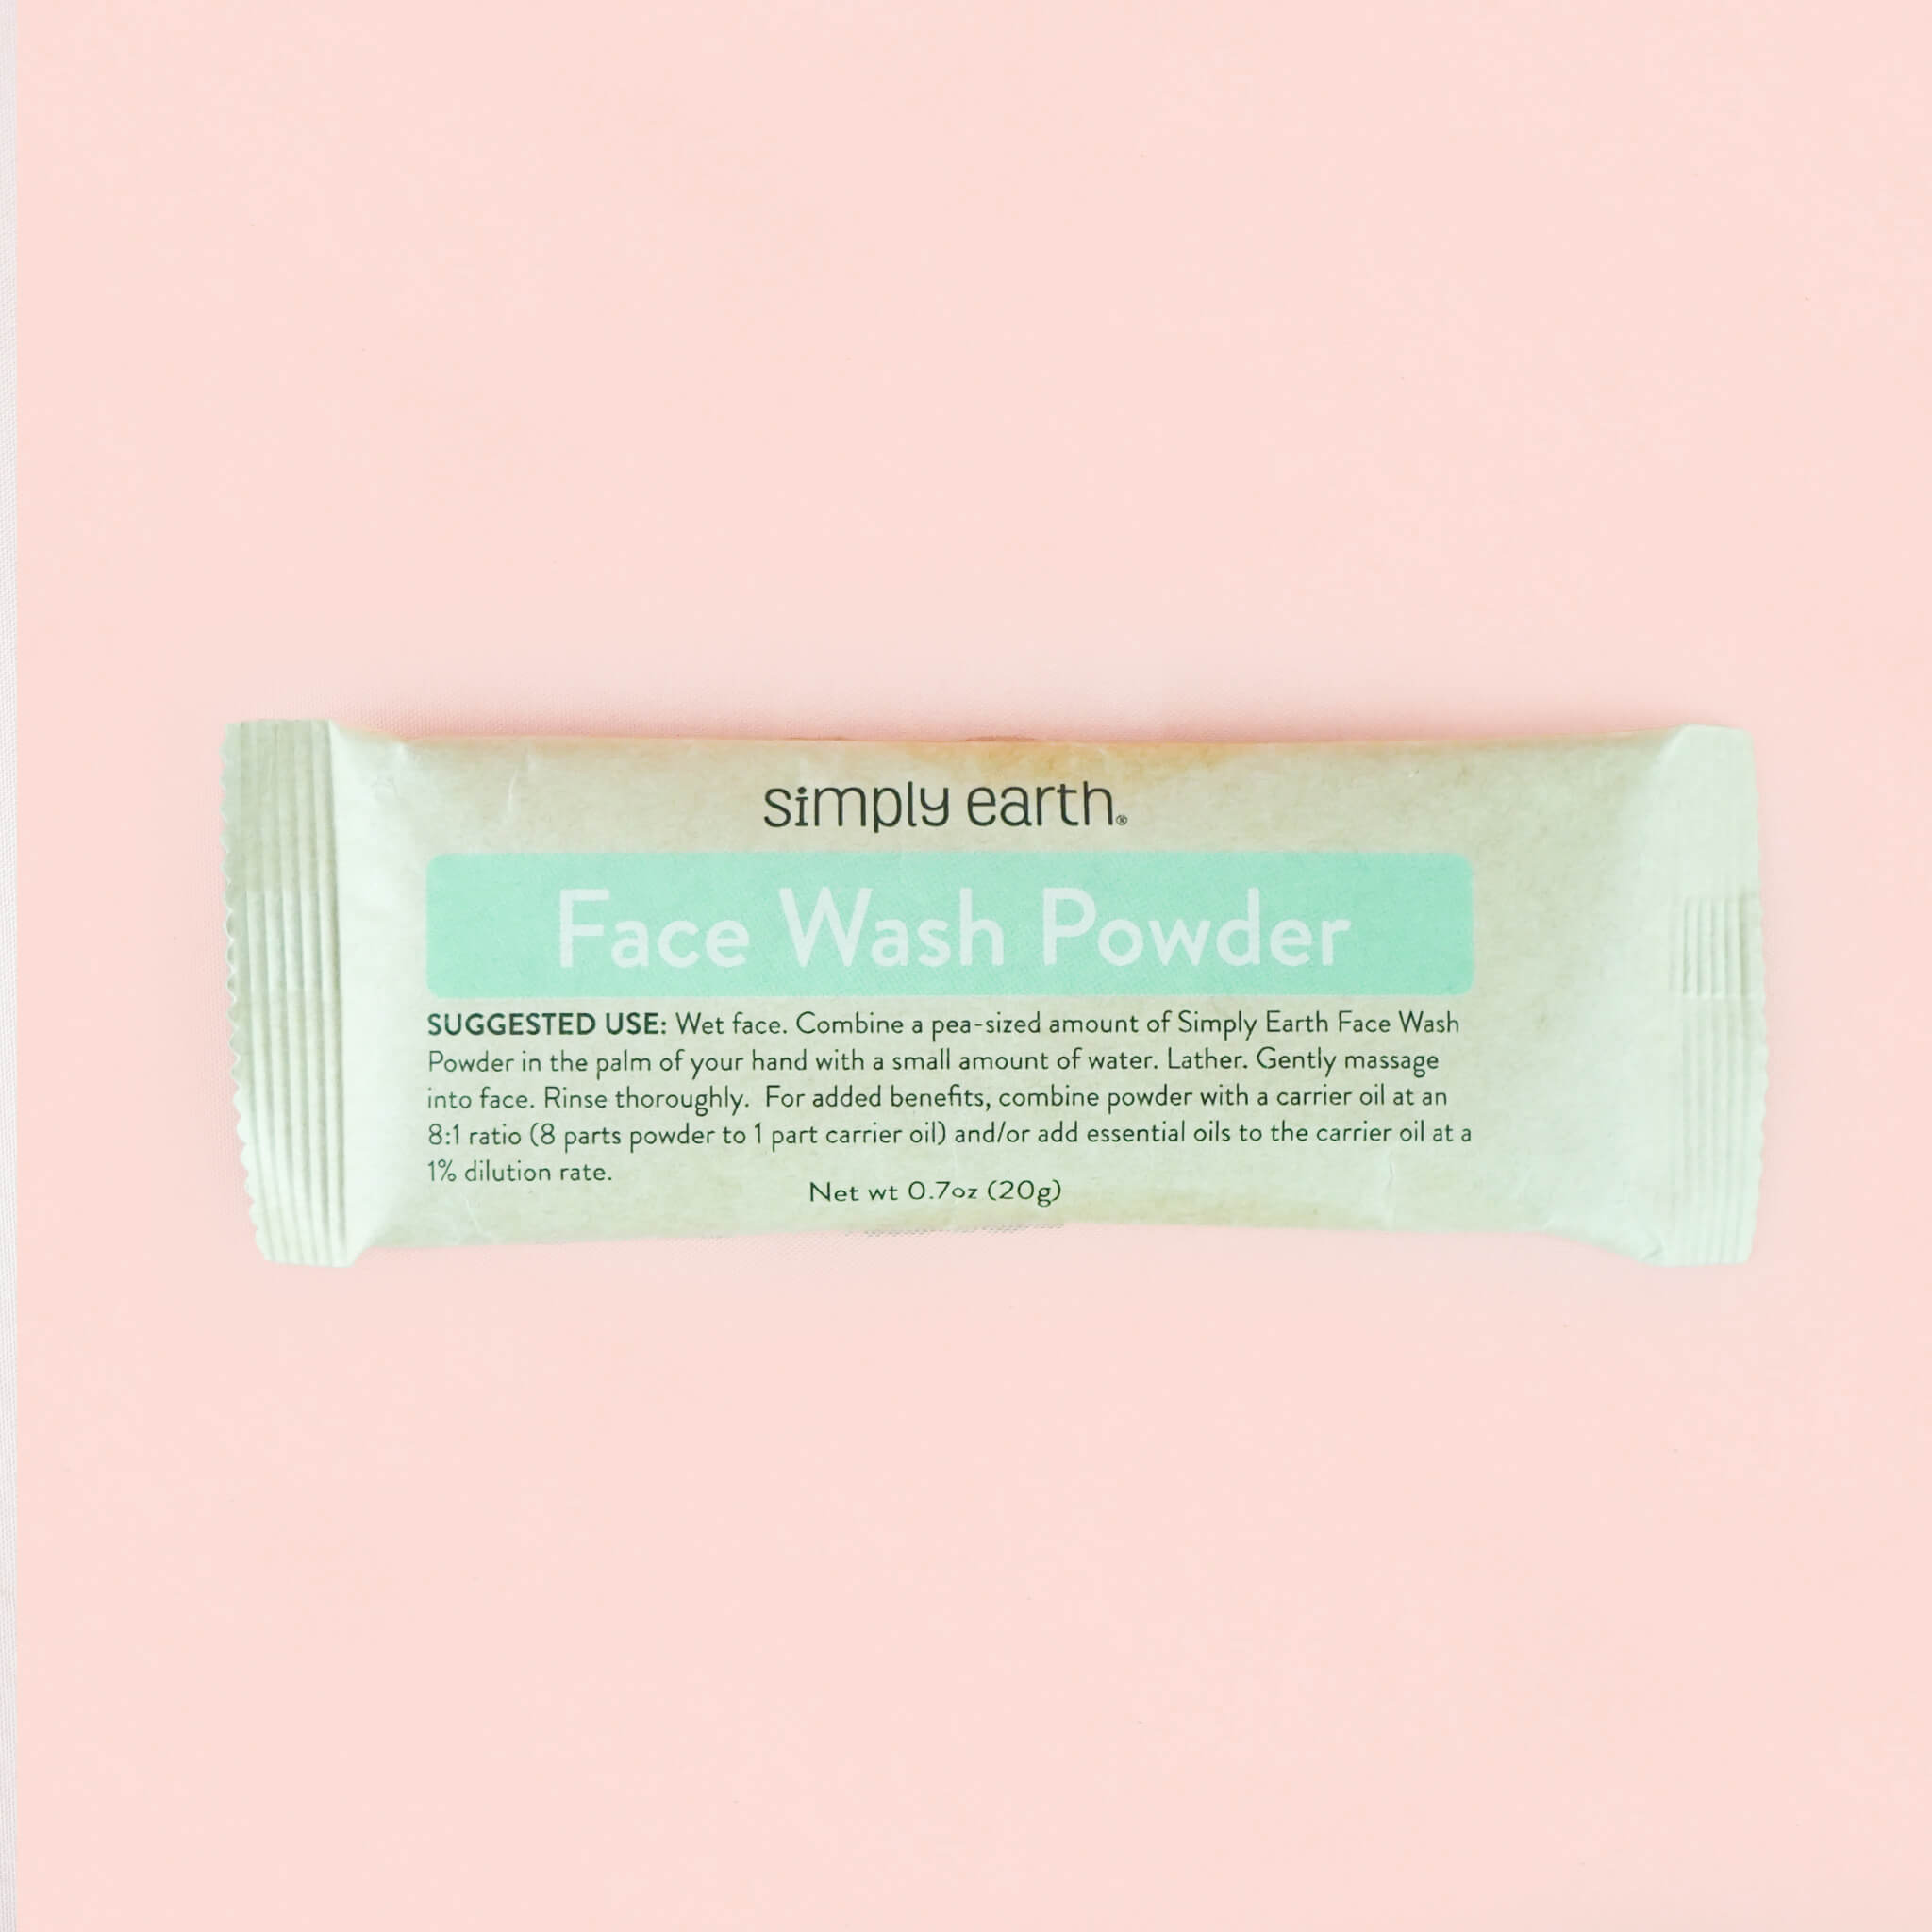 Face Wash Powder Size: 20g